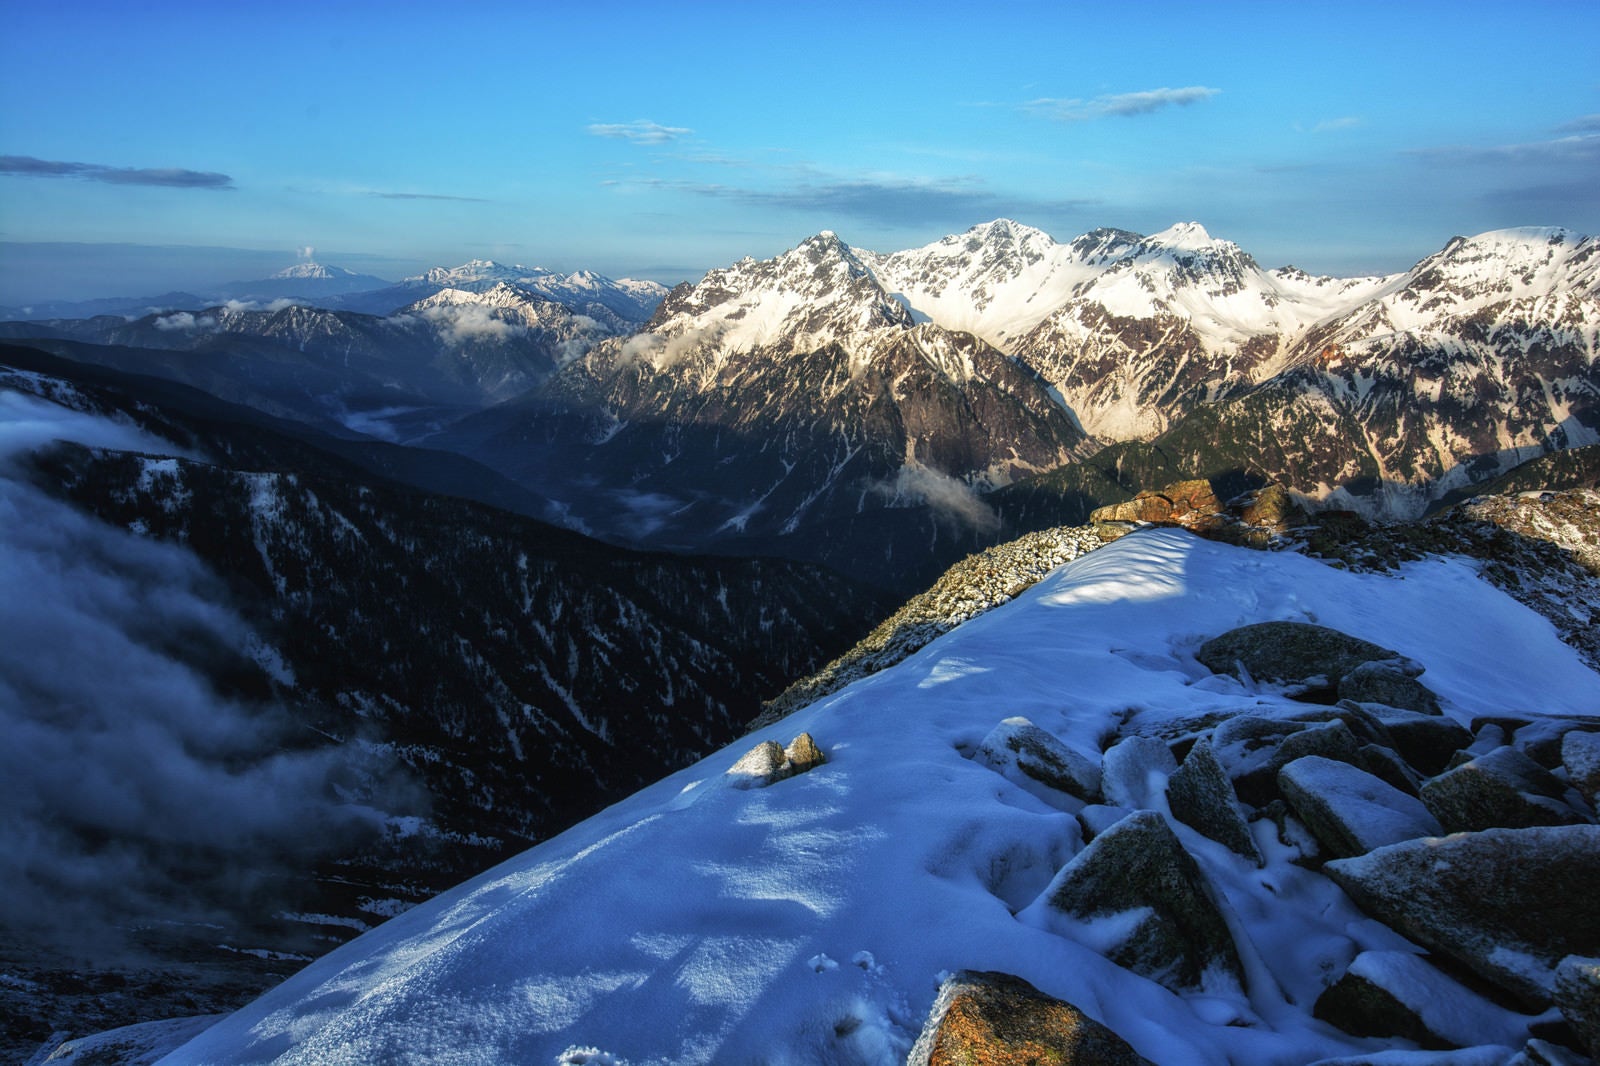 「常念岳山頂の雪景色」の写真